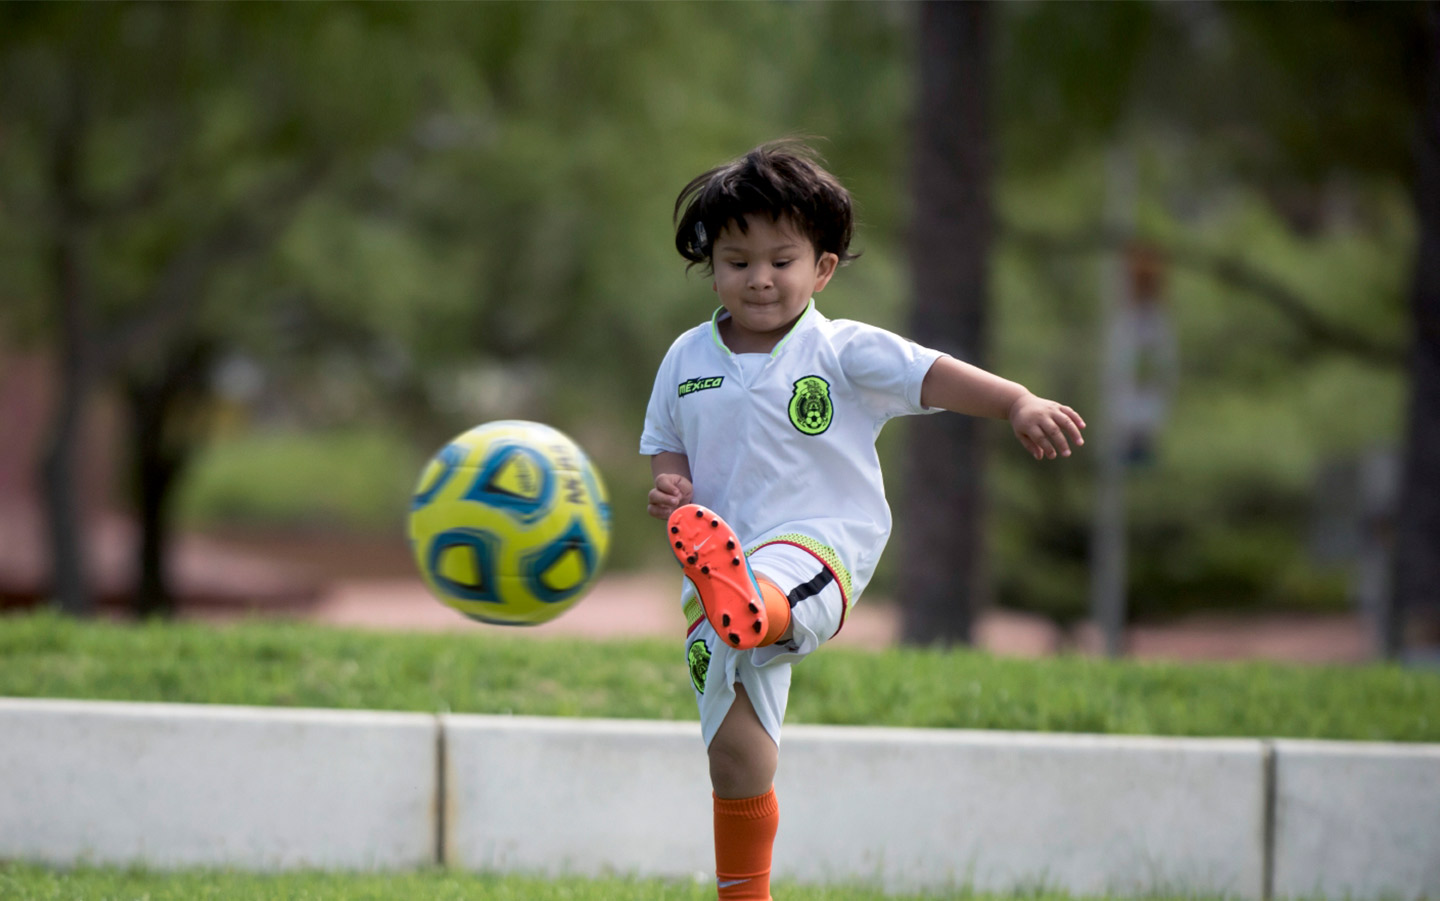 Baha-puheprosessoria käyttävä lapsi pelaa jalkapalloa